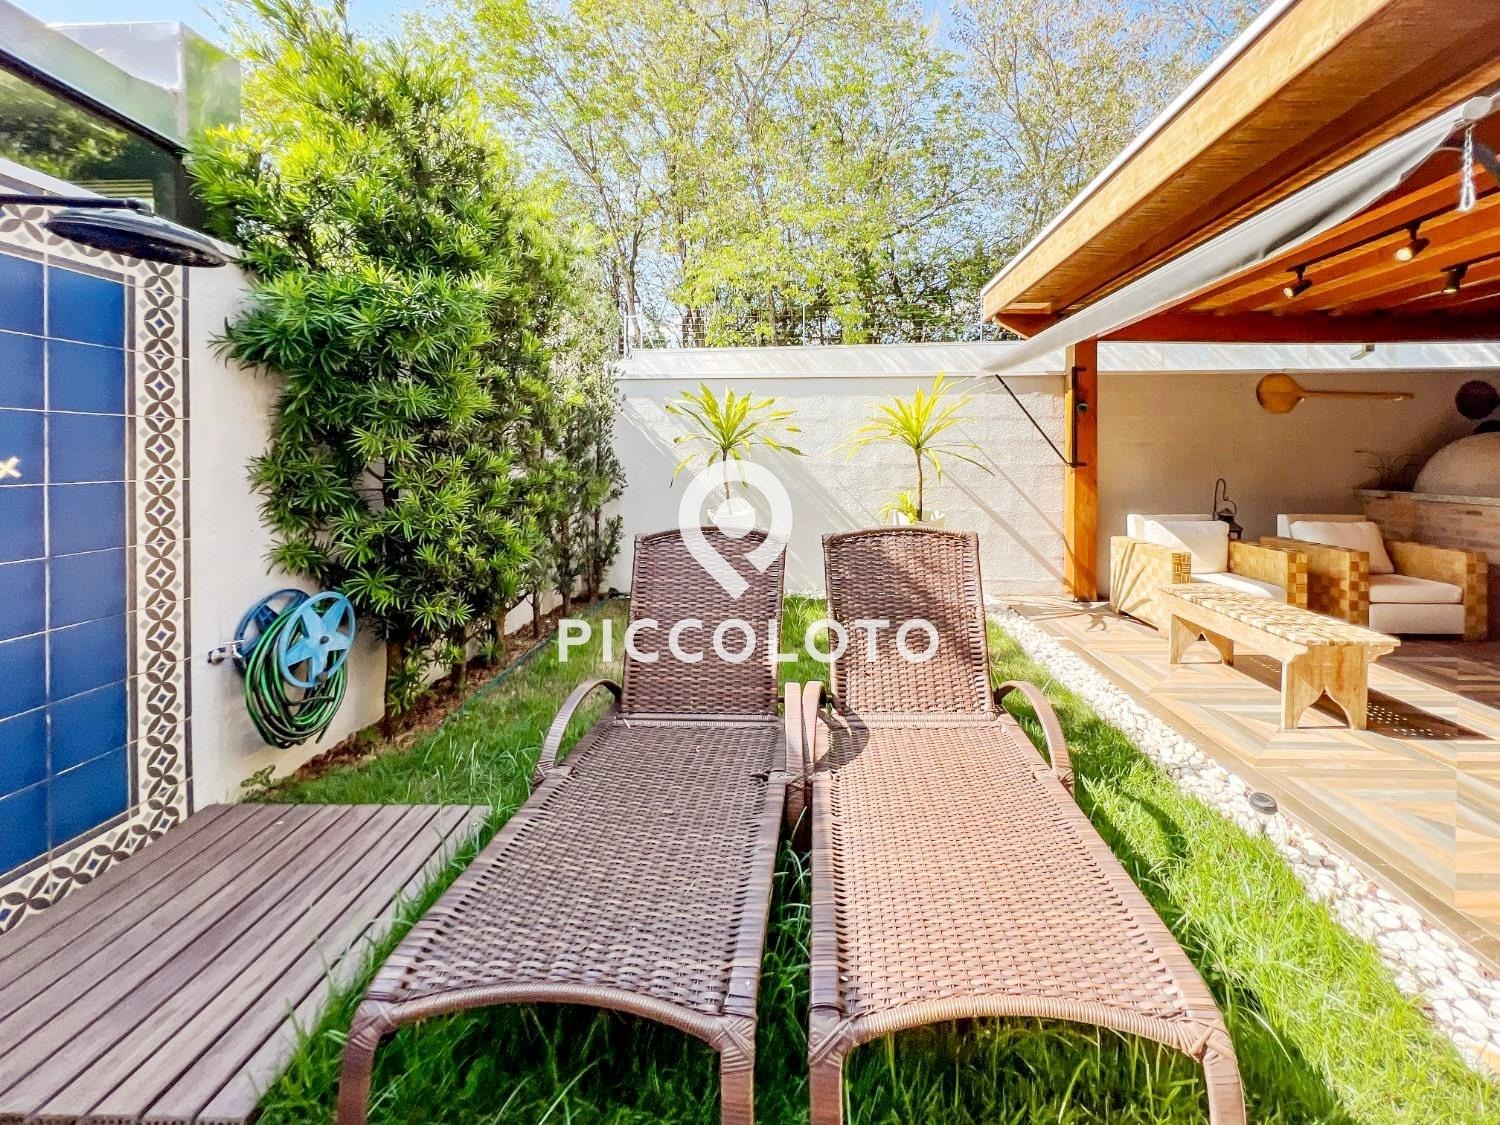 Piccoloto -Casa à venda no Jardim Myrian Moreira da Costa em Campinas